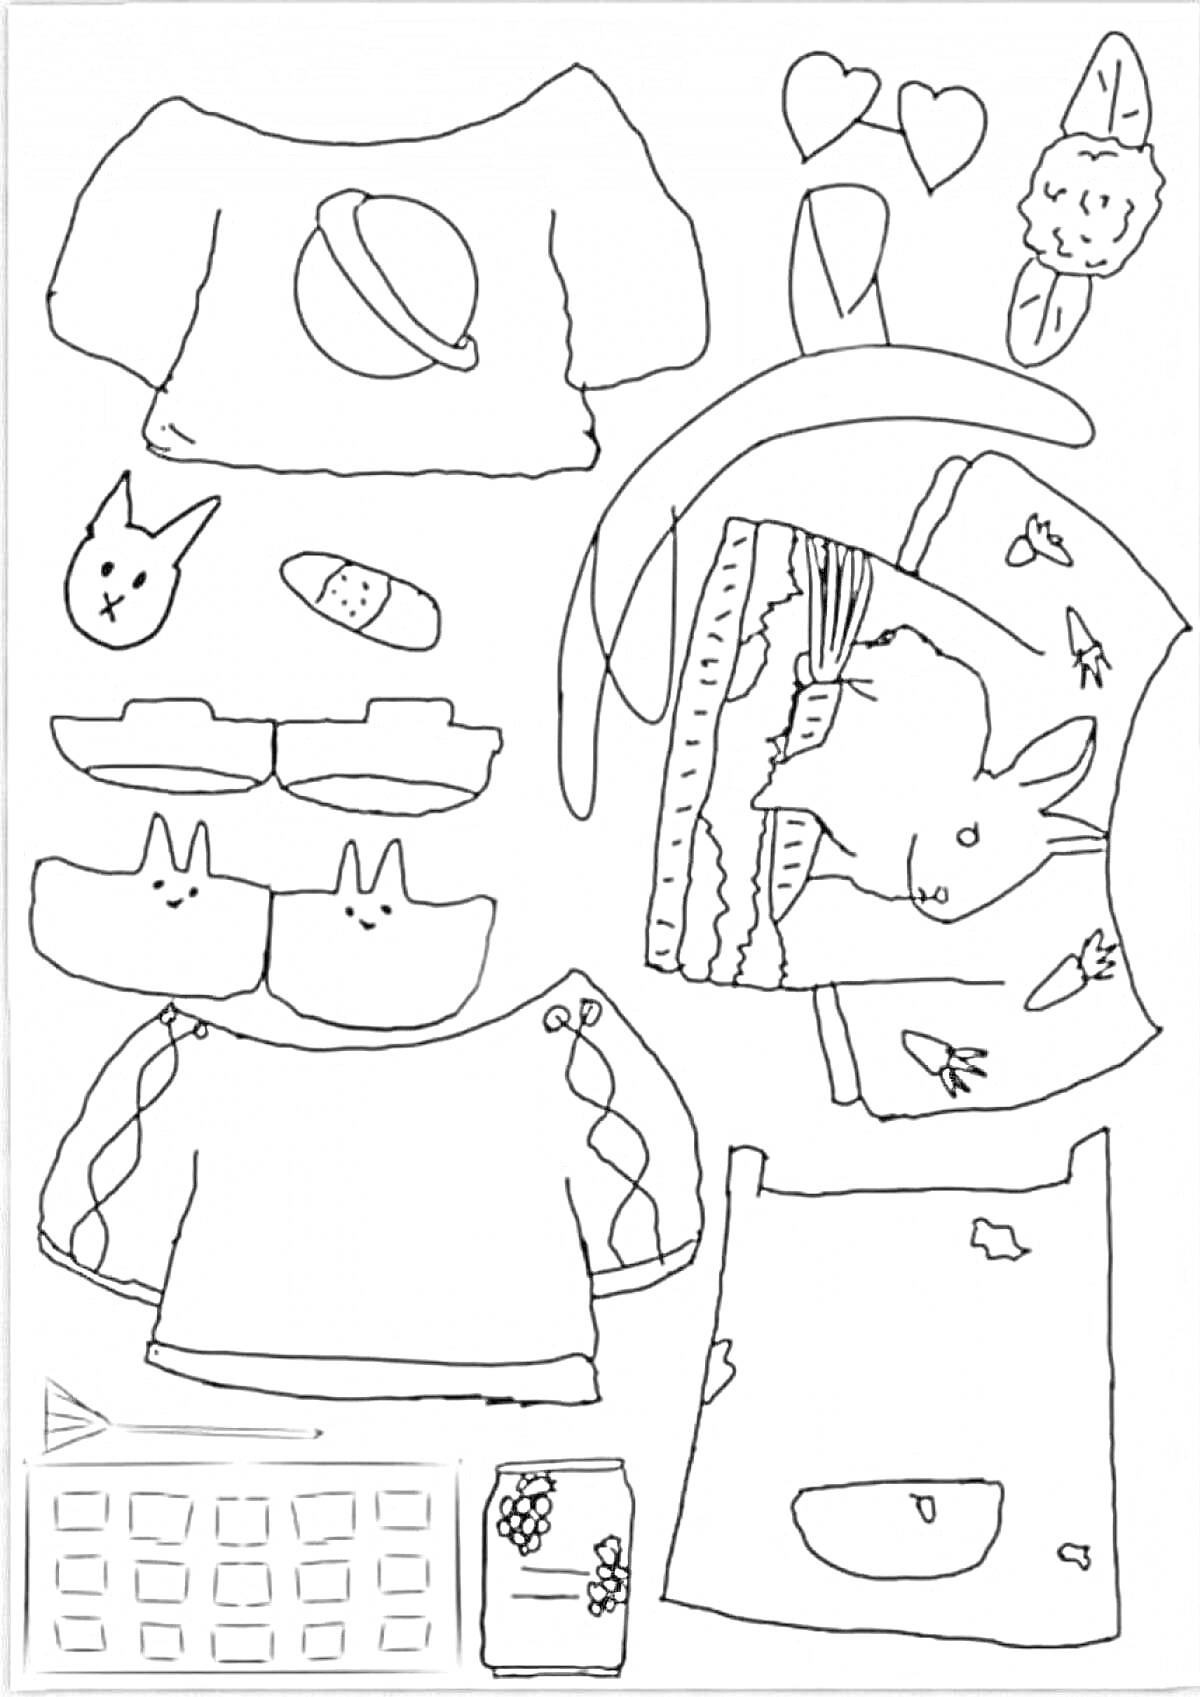 Уточка Лалафанфан с одеждой и аксессуарами - кофточки, кроссовки, голова уточки, трусики с апельсином, носочки, сердечки, резинки, маска для сна, юбка, книга, карандаш